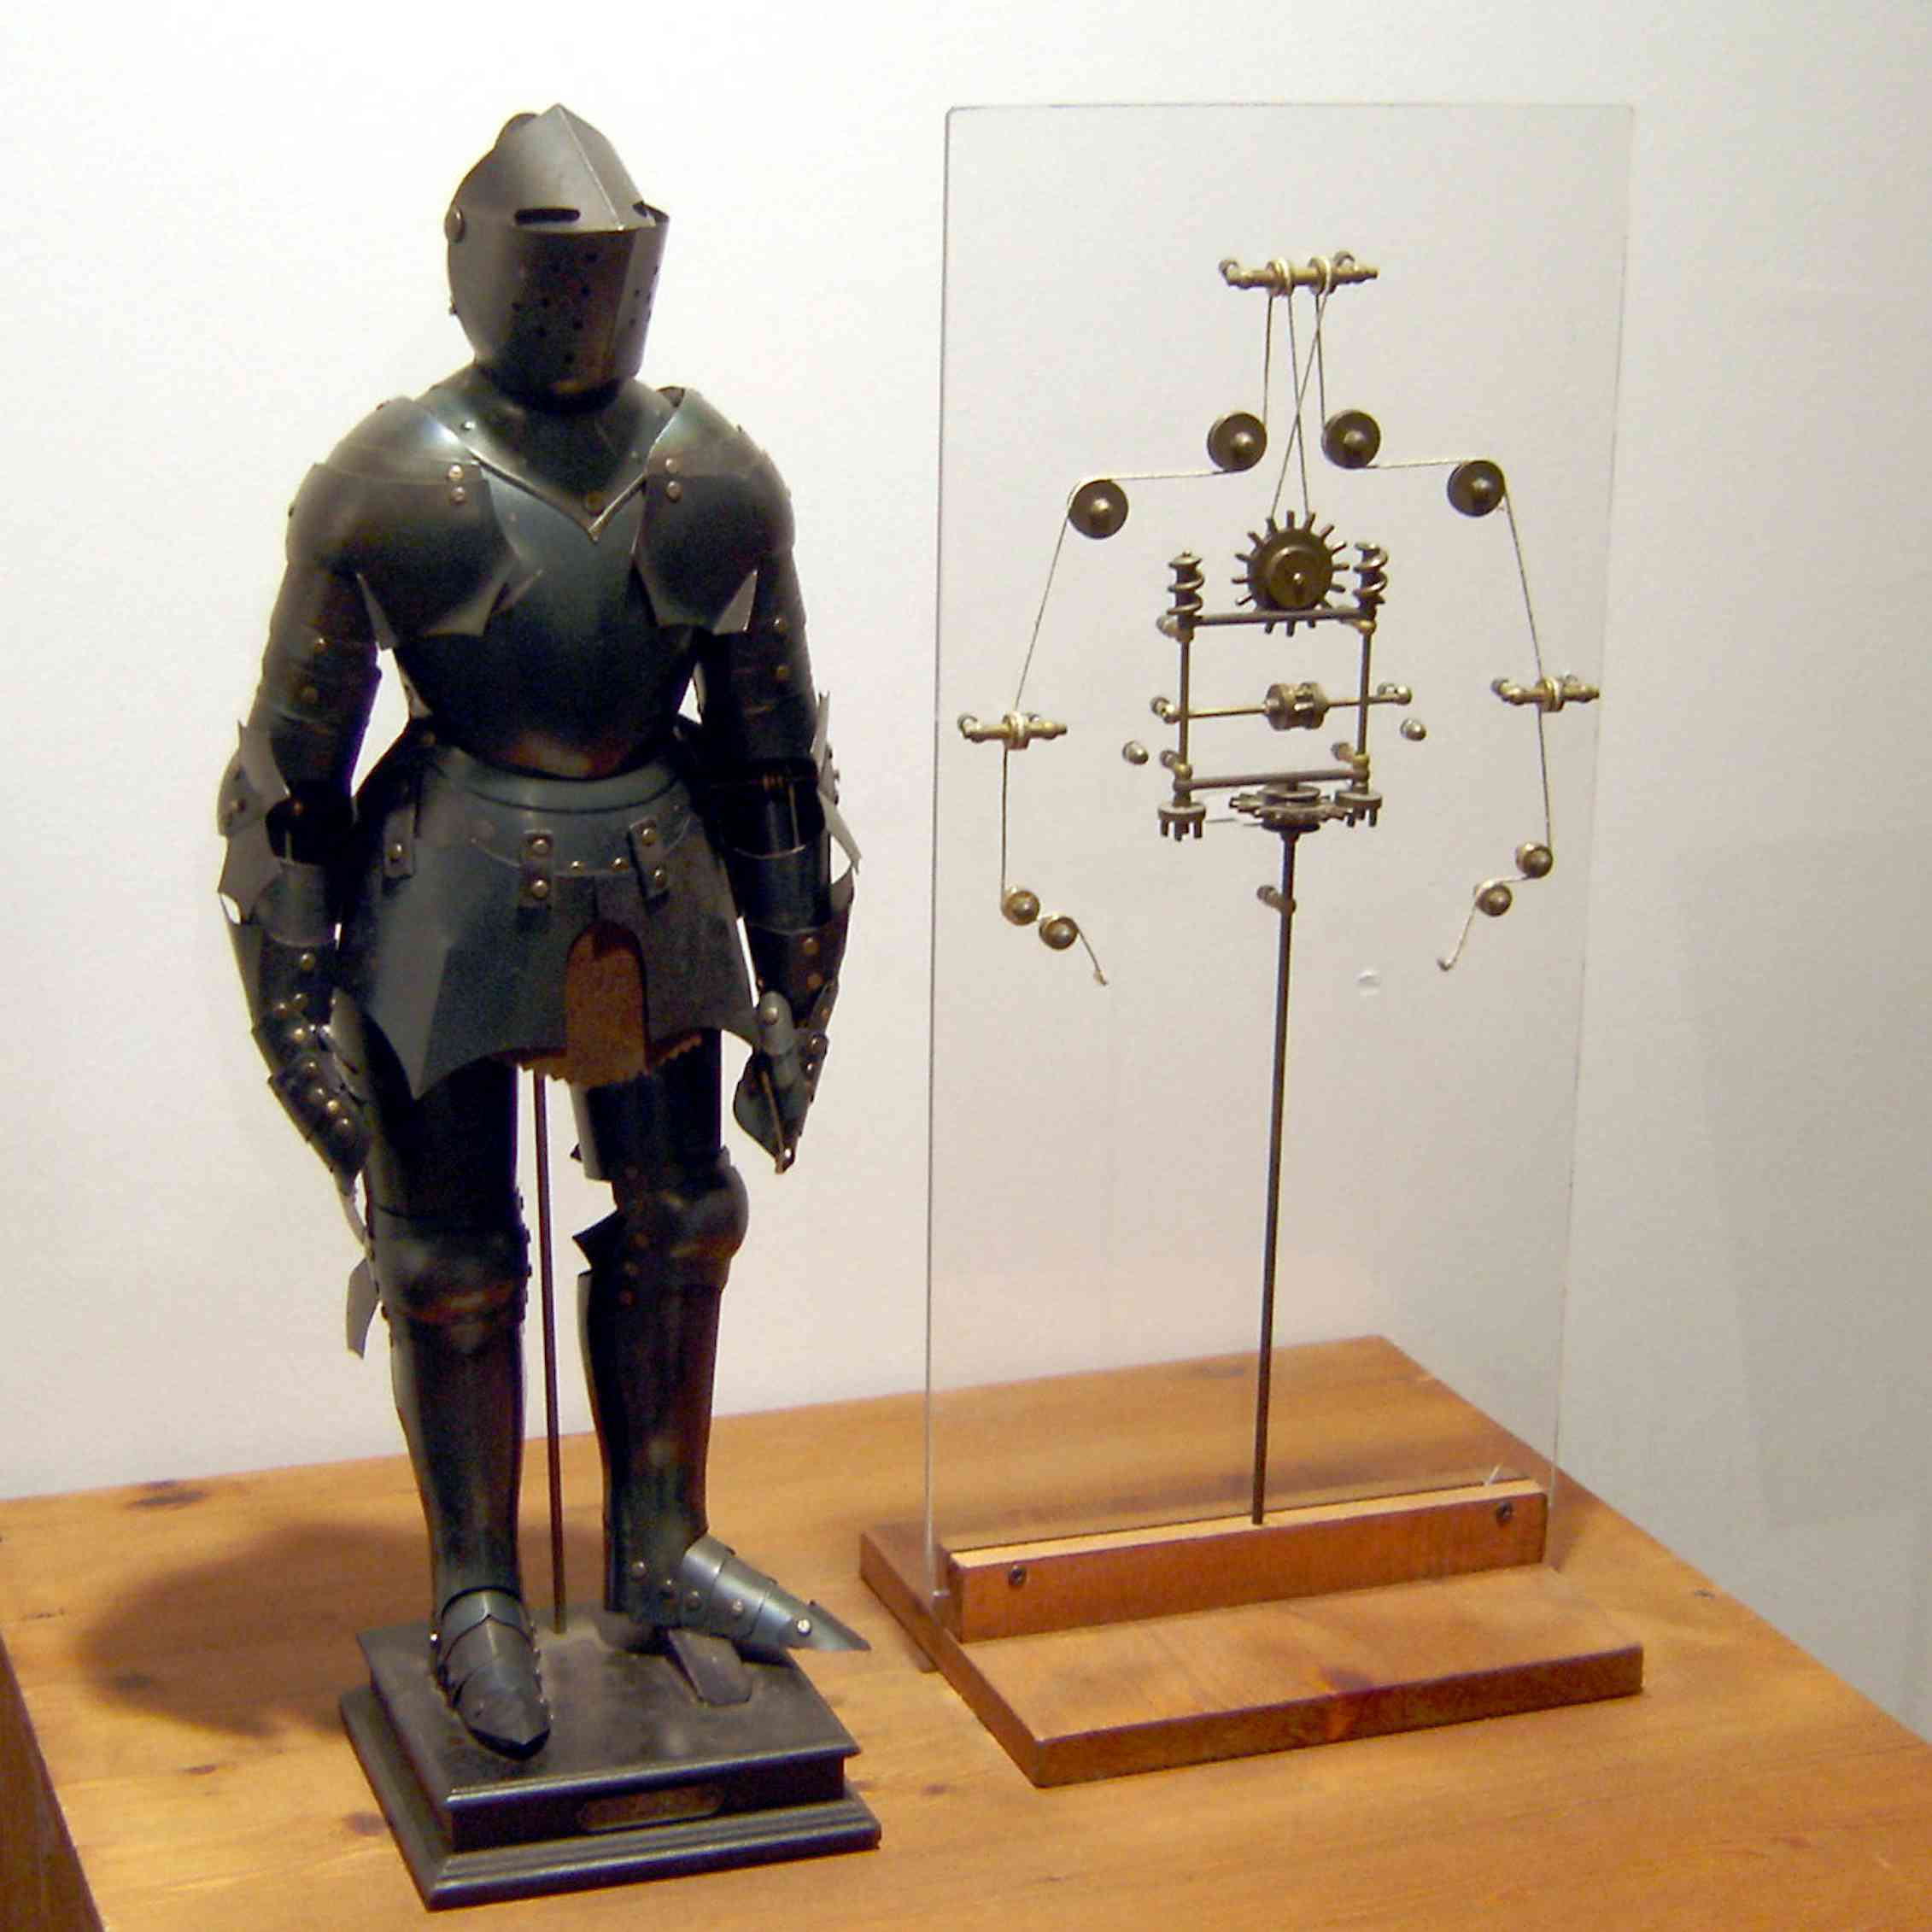 Первые прототипы роботов. Робот рыцарь Леонардо да Винчи. Робот Леонардо да Винчи 1495. Механический рыцарь Леонардо да Винчи. Первый человекоподобный робот Леонардо да Винчи.